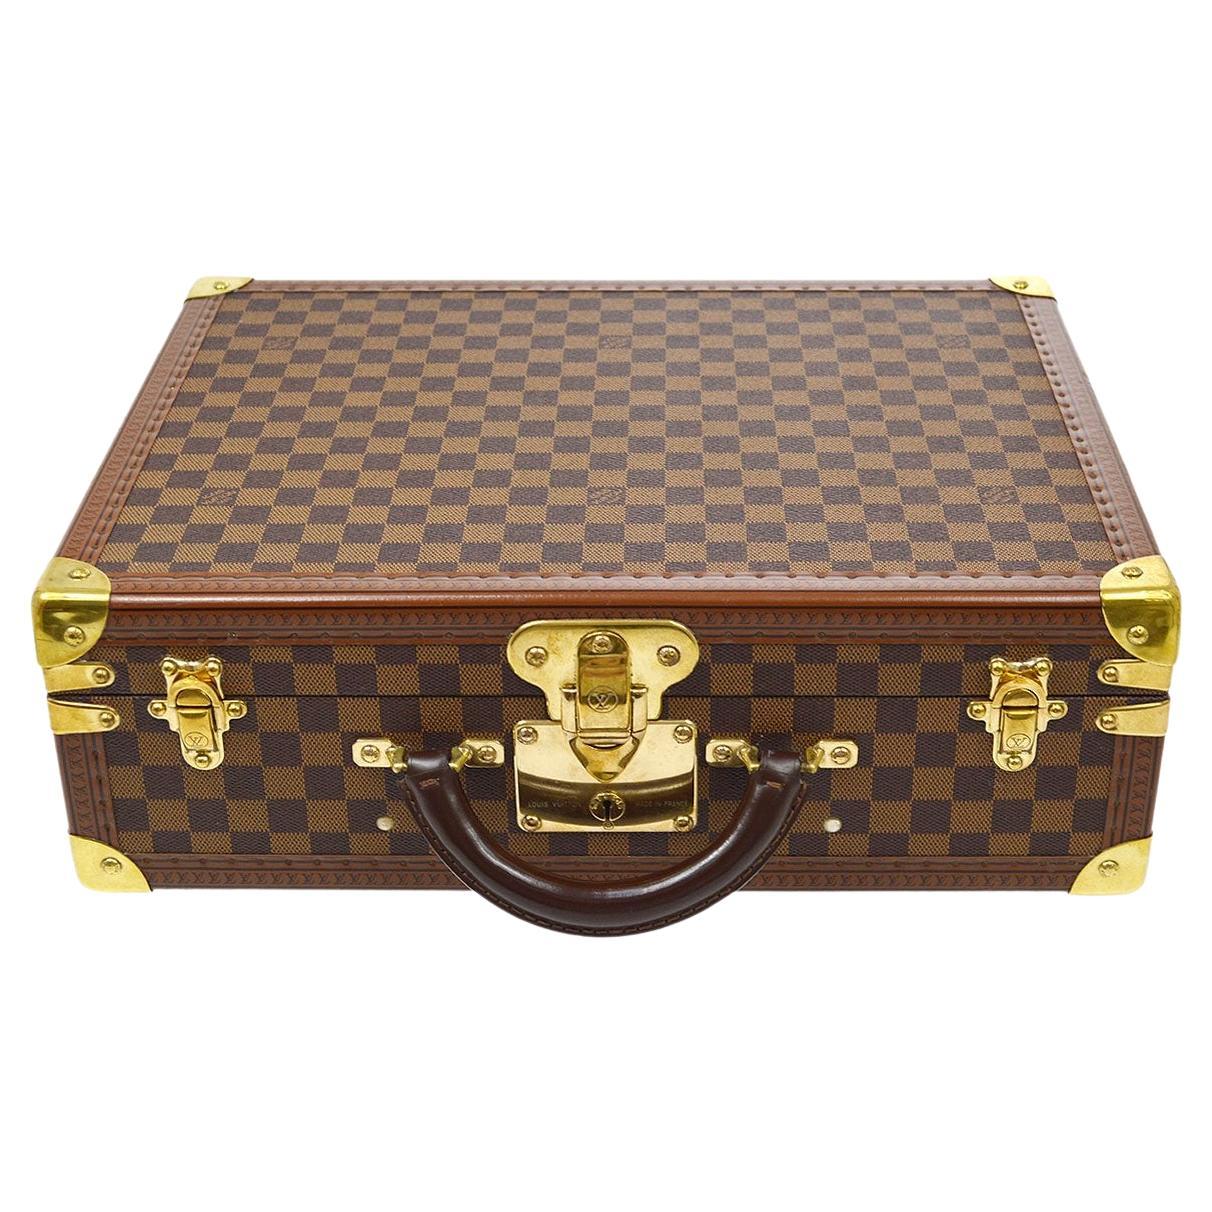 LOUIS VUITTON Damier Canvas Gold Leather Trunk Travel Case